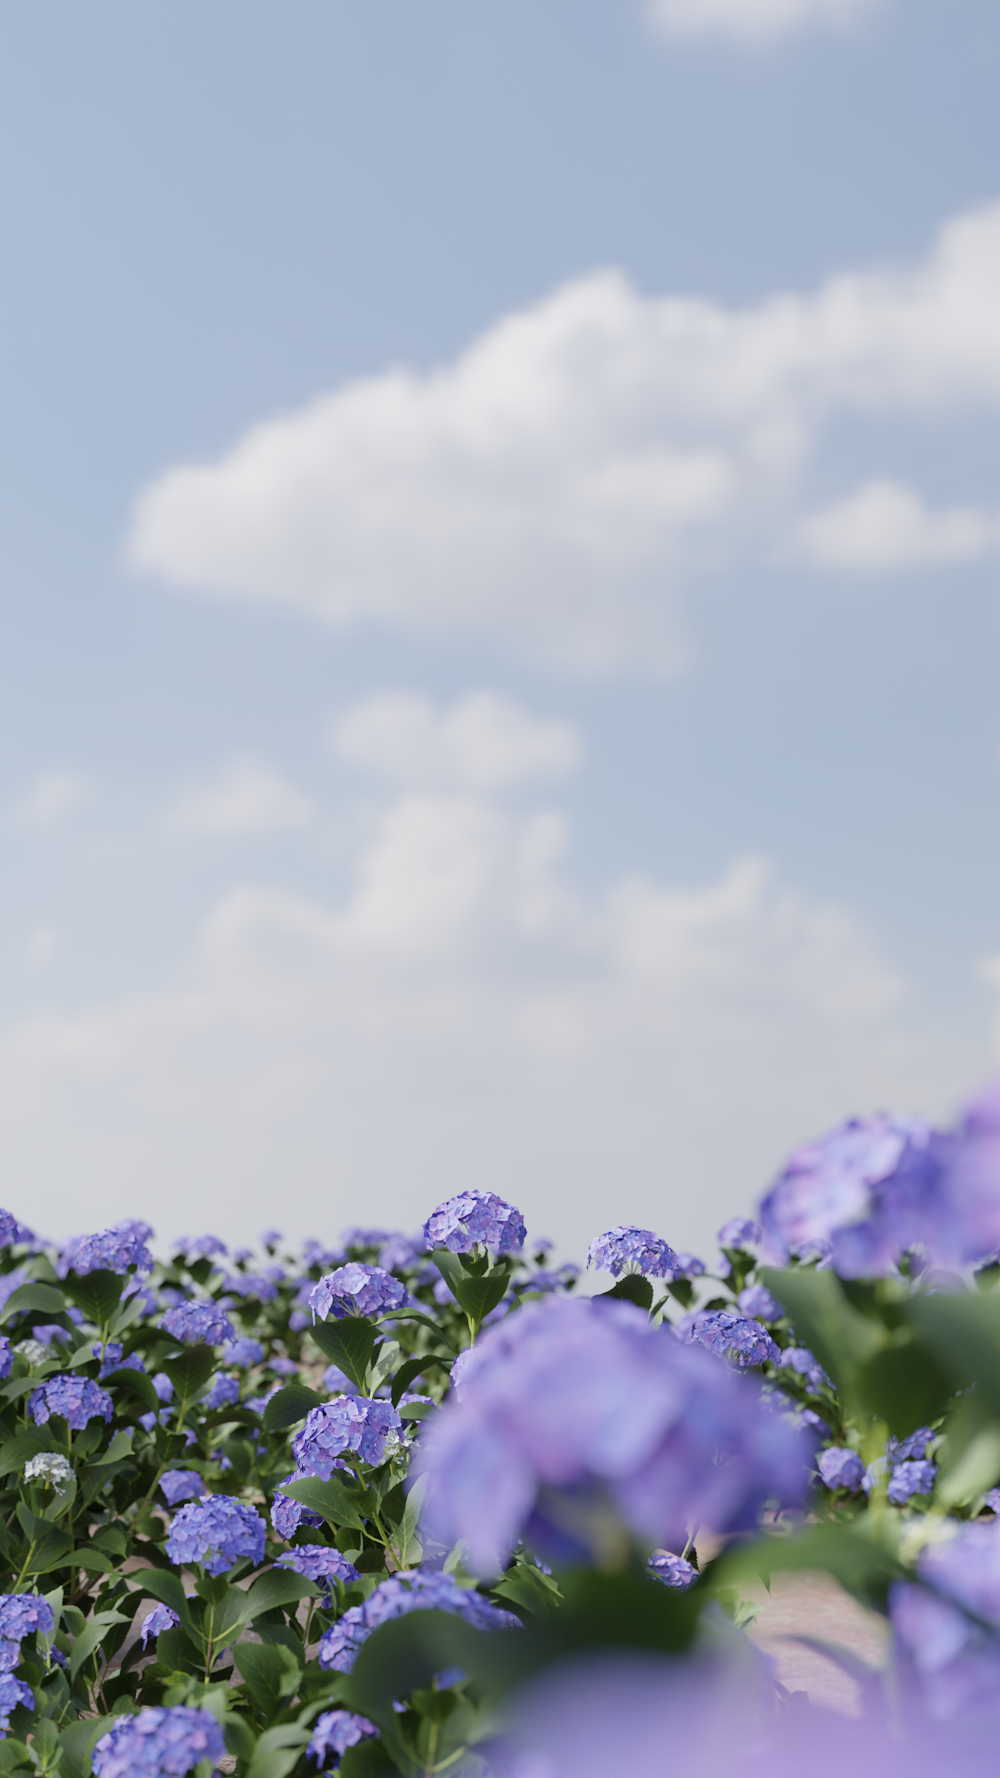 a field full of purple flowers under a blue sky